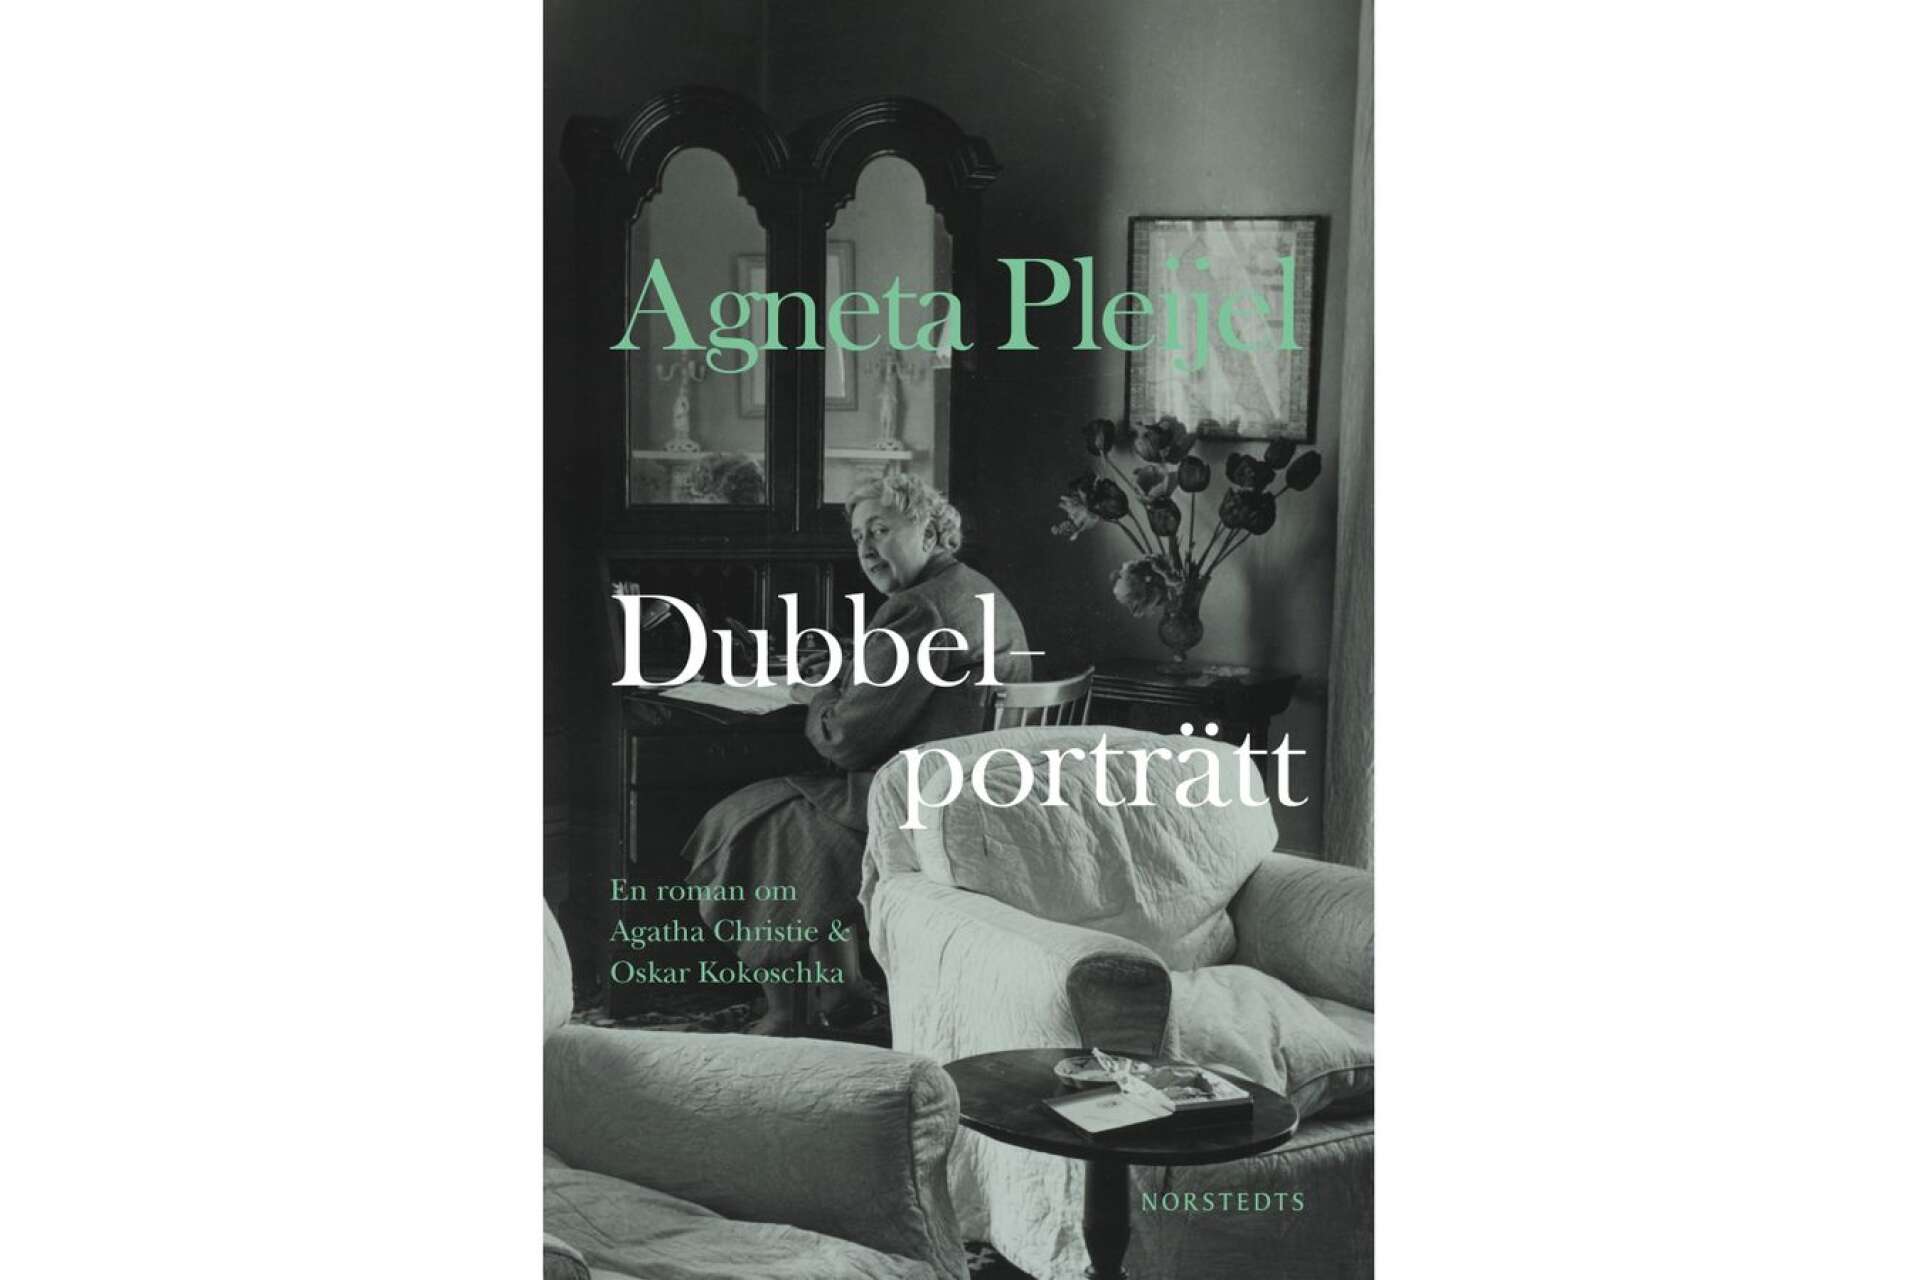 Titel: Dubbelporträtt Författare: Agneta Pleijel Förlag: Norstedts